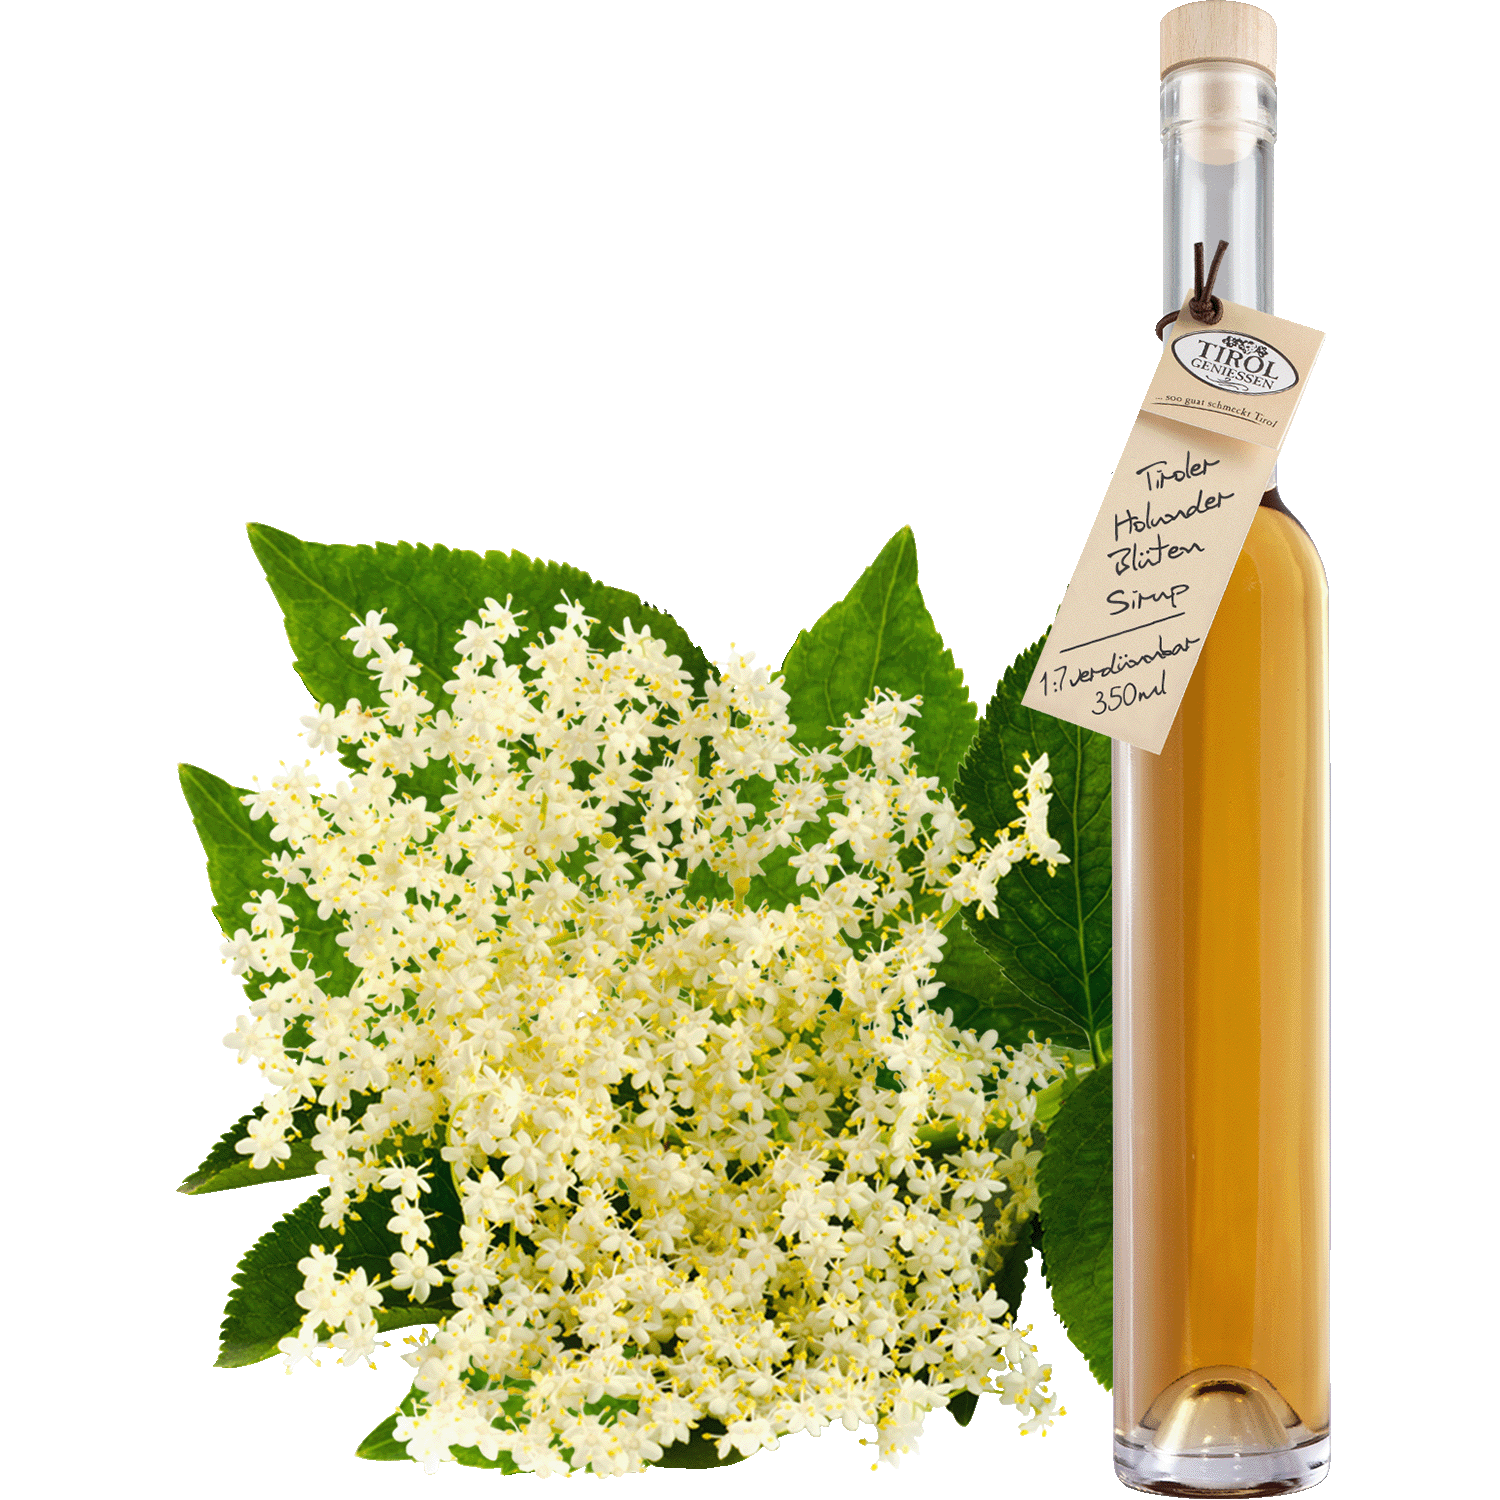 Elderflower Syrup in gift bottle from Austria from Tirol Geniessen